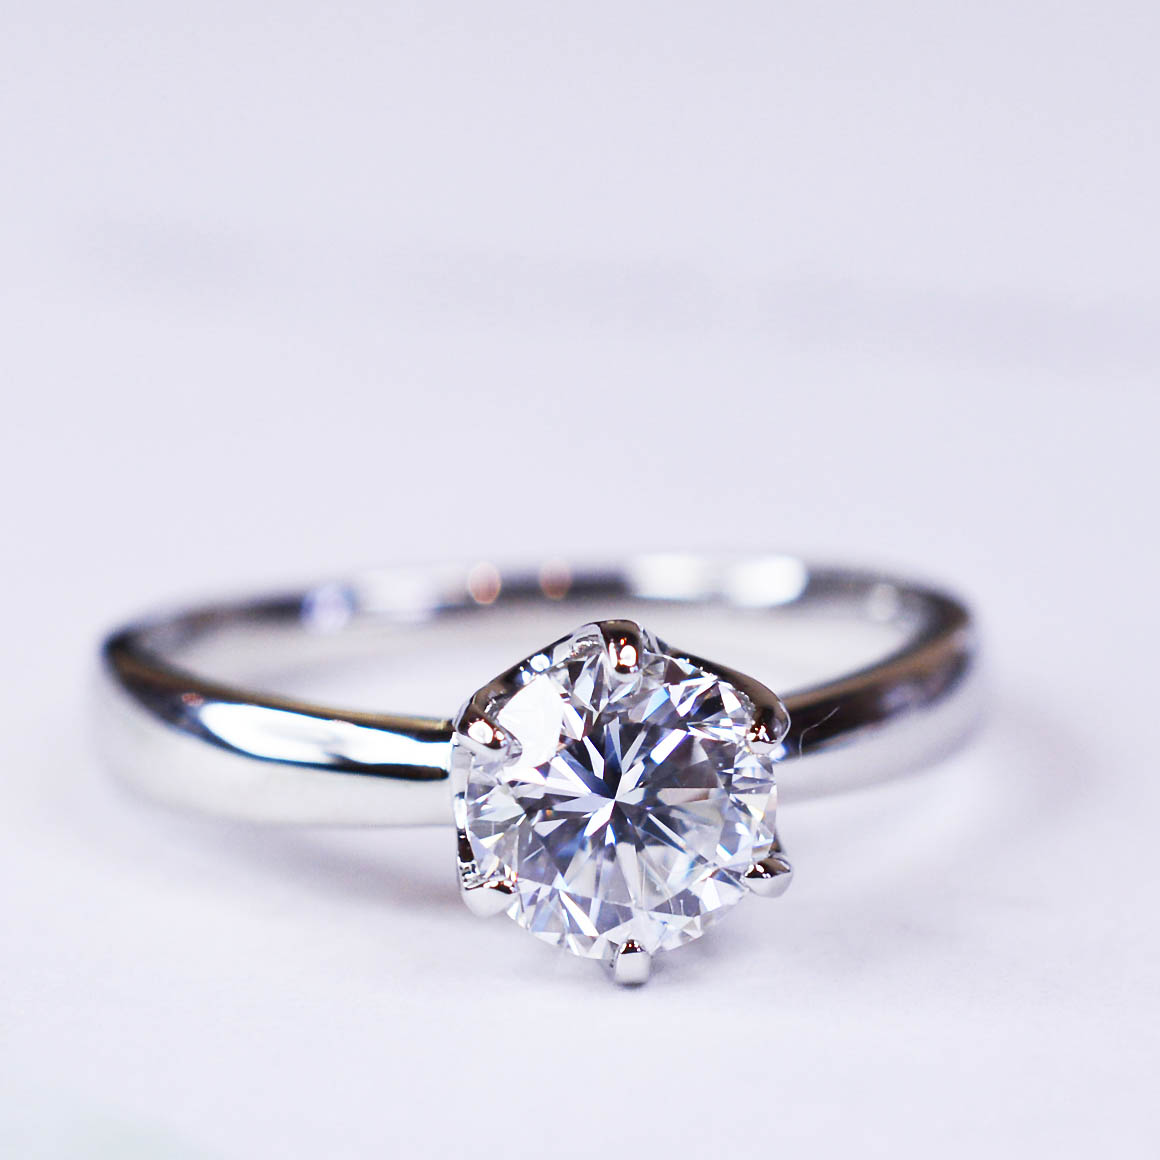 サプライズに「特別」を送りましょう@手作り結婚指輪 工房スミス札幌店